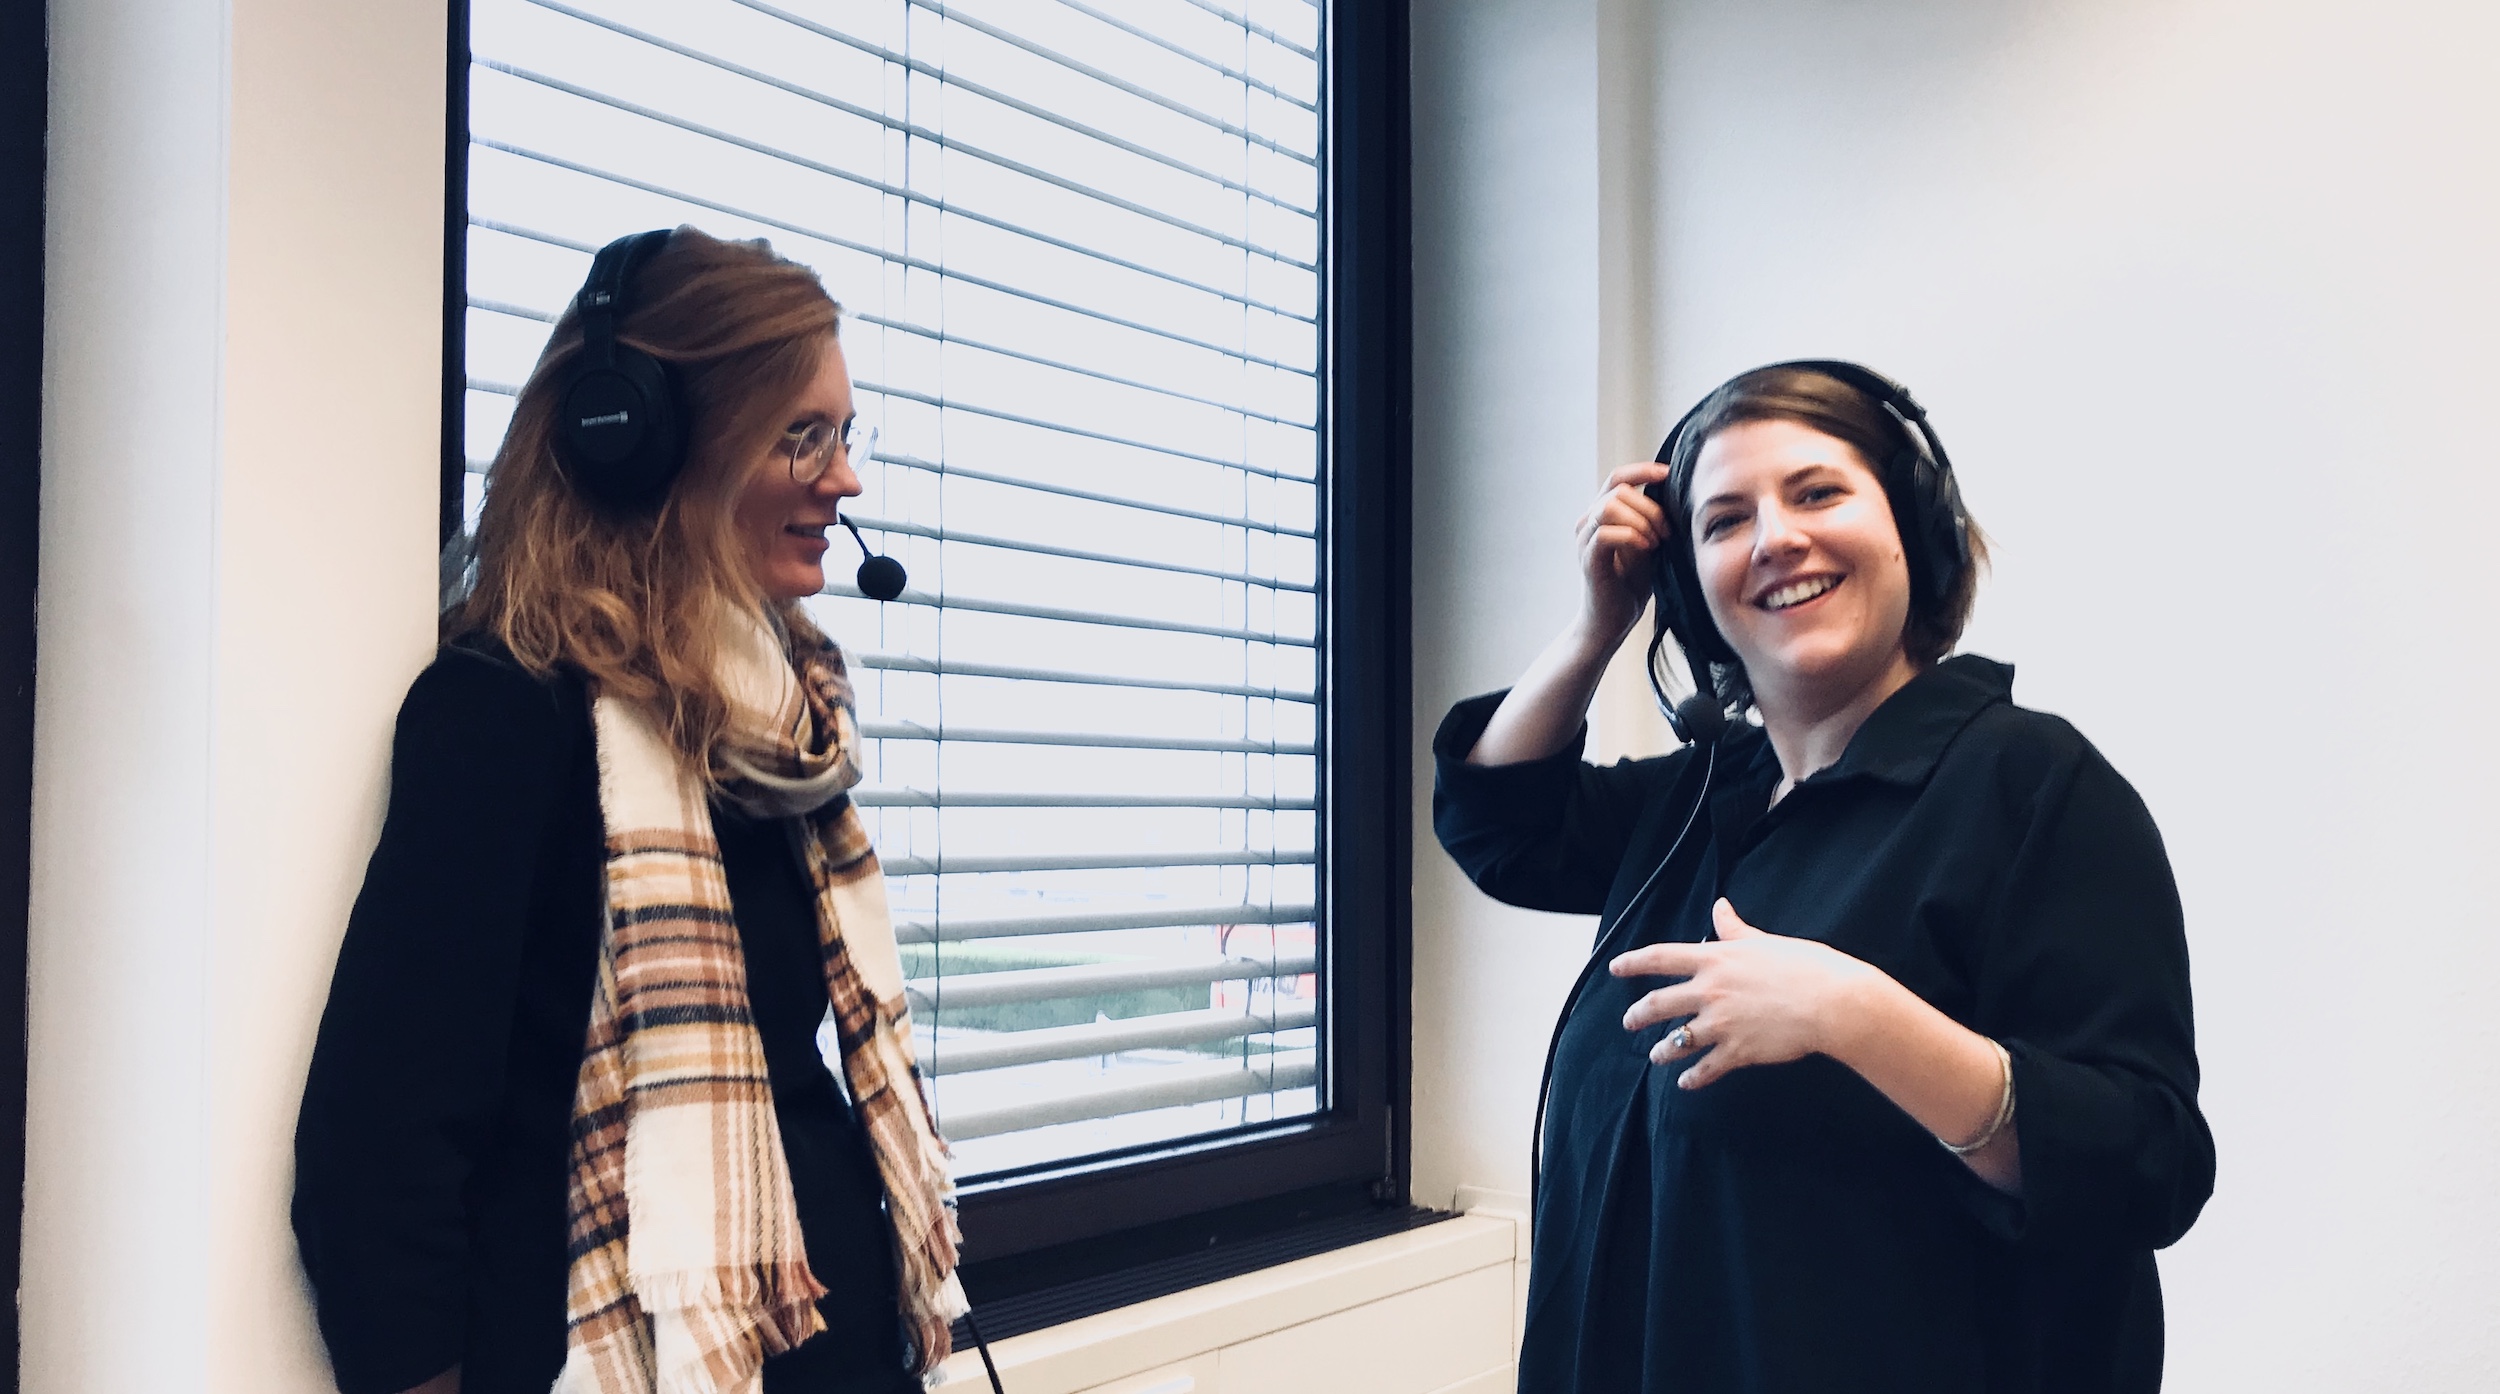 Unser Mitarbeiterin Lia im Gespräch mit Sarah Schäfer. Beide tragen Podcast-Kopfhörer.